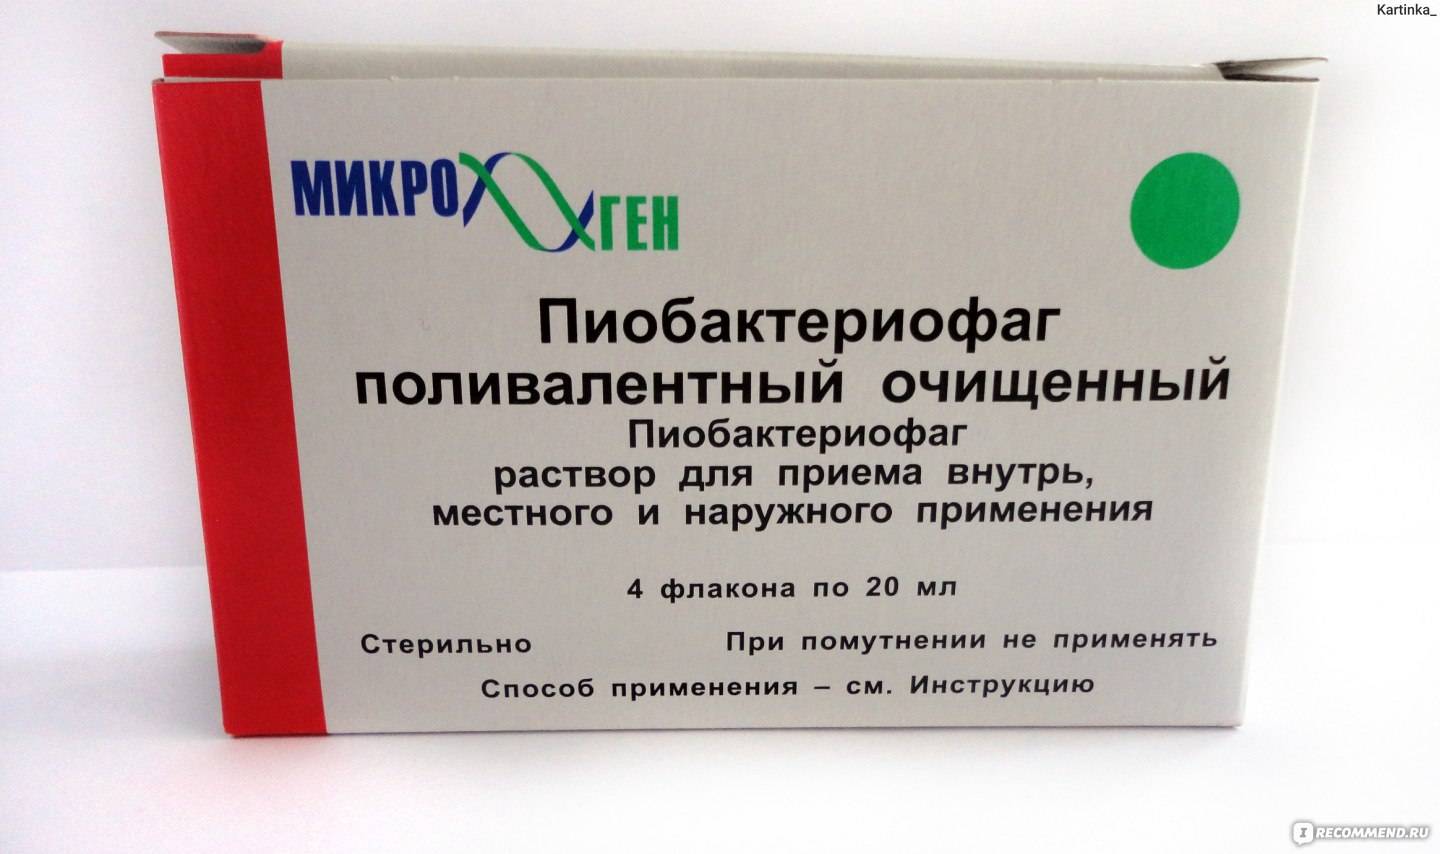 Бактериофаг клебсиелл поливалентный очищенный: инструкция по применению, цена, отзывы - medside.ru